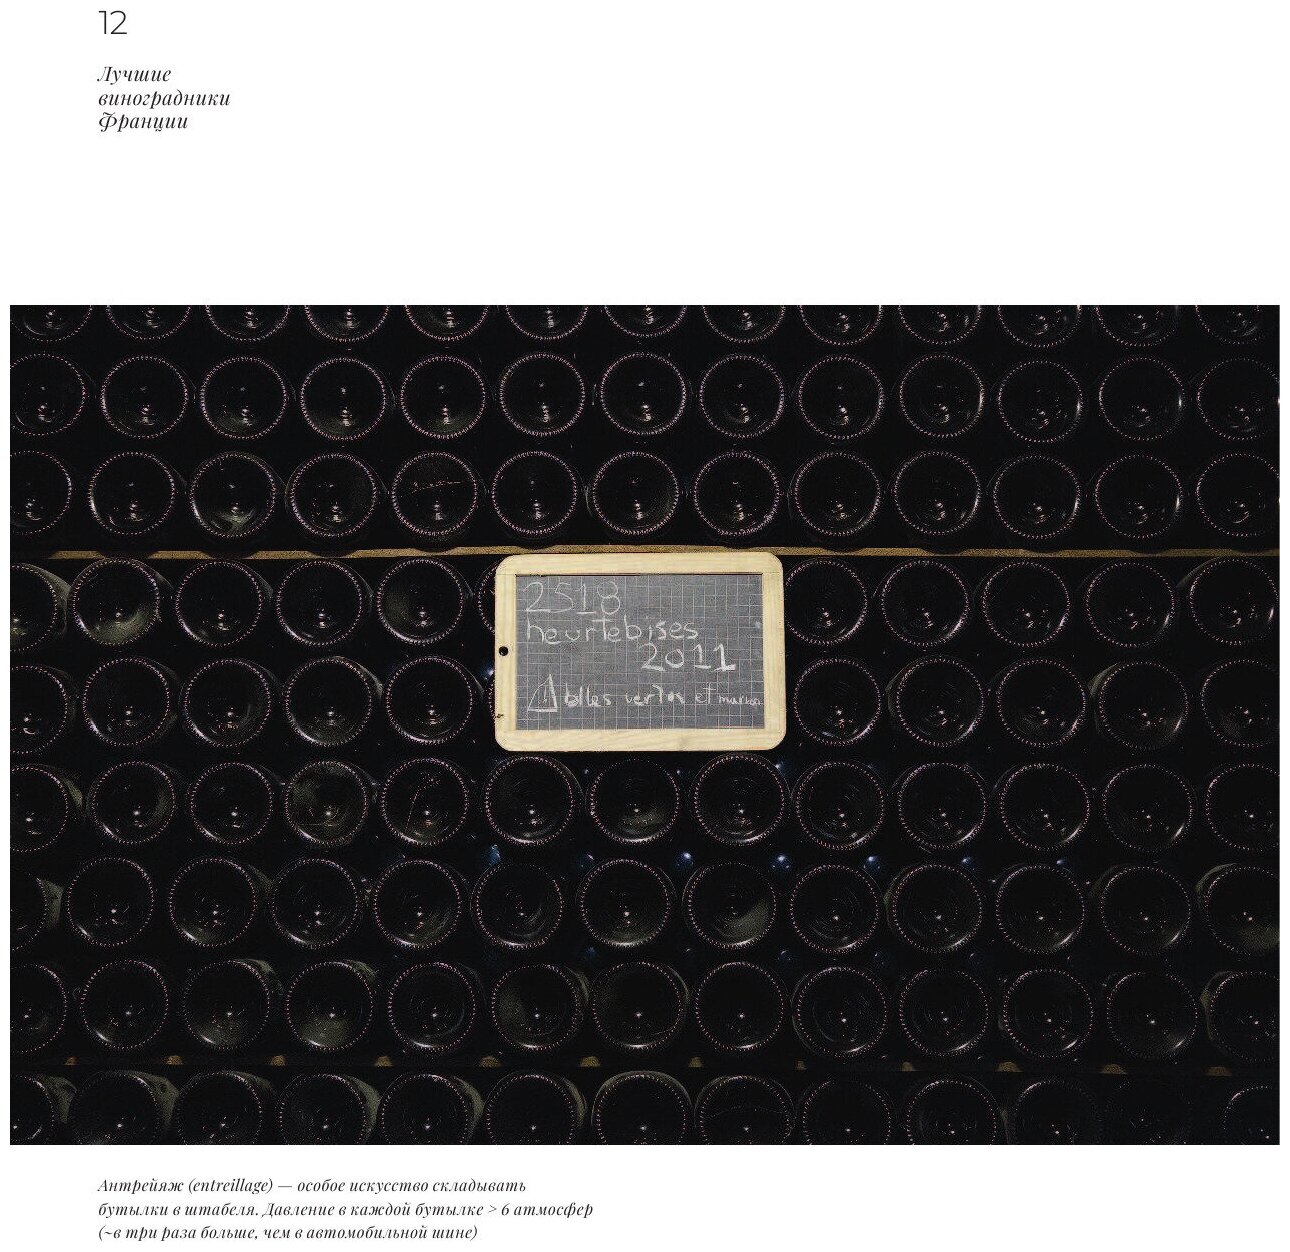 Франция. Лучшие шато и домены. Престижные винные хозяйства Бордо, Бургундии и Шампани - фото №16